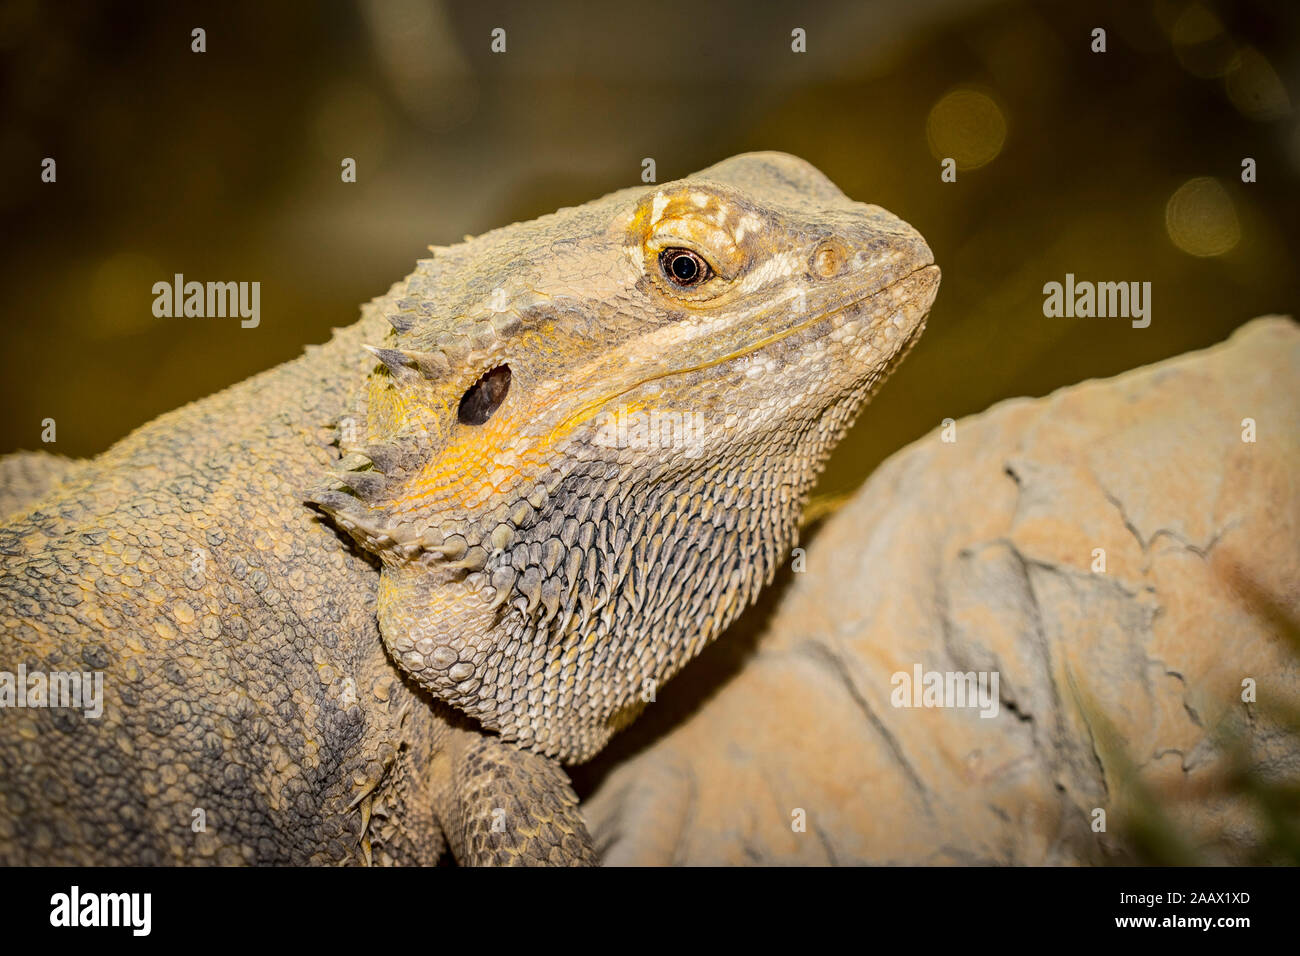 Close up of a large green iguana Latin name Iguana iguana the south Florida keys Key West . Stock Photo